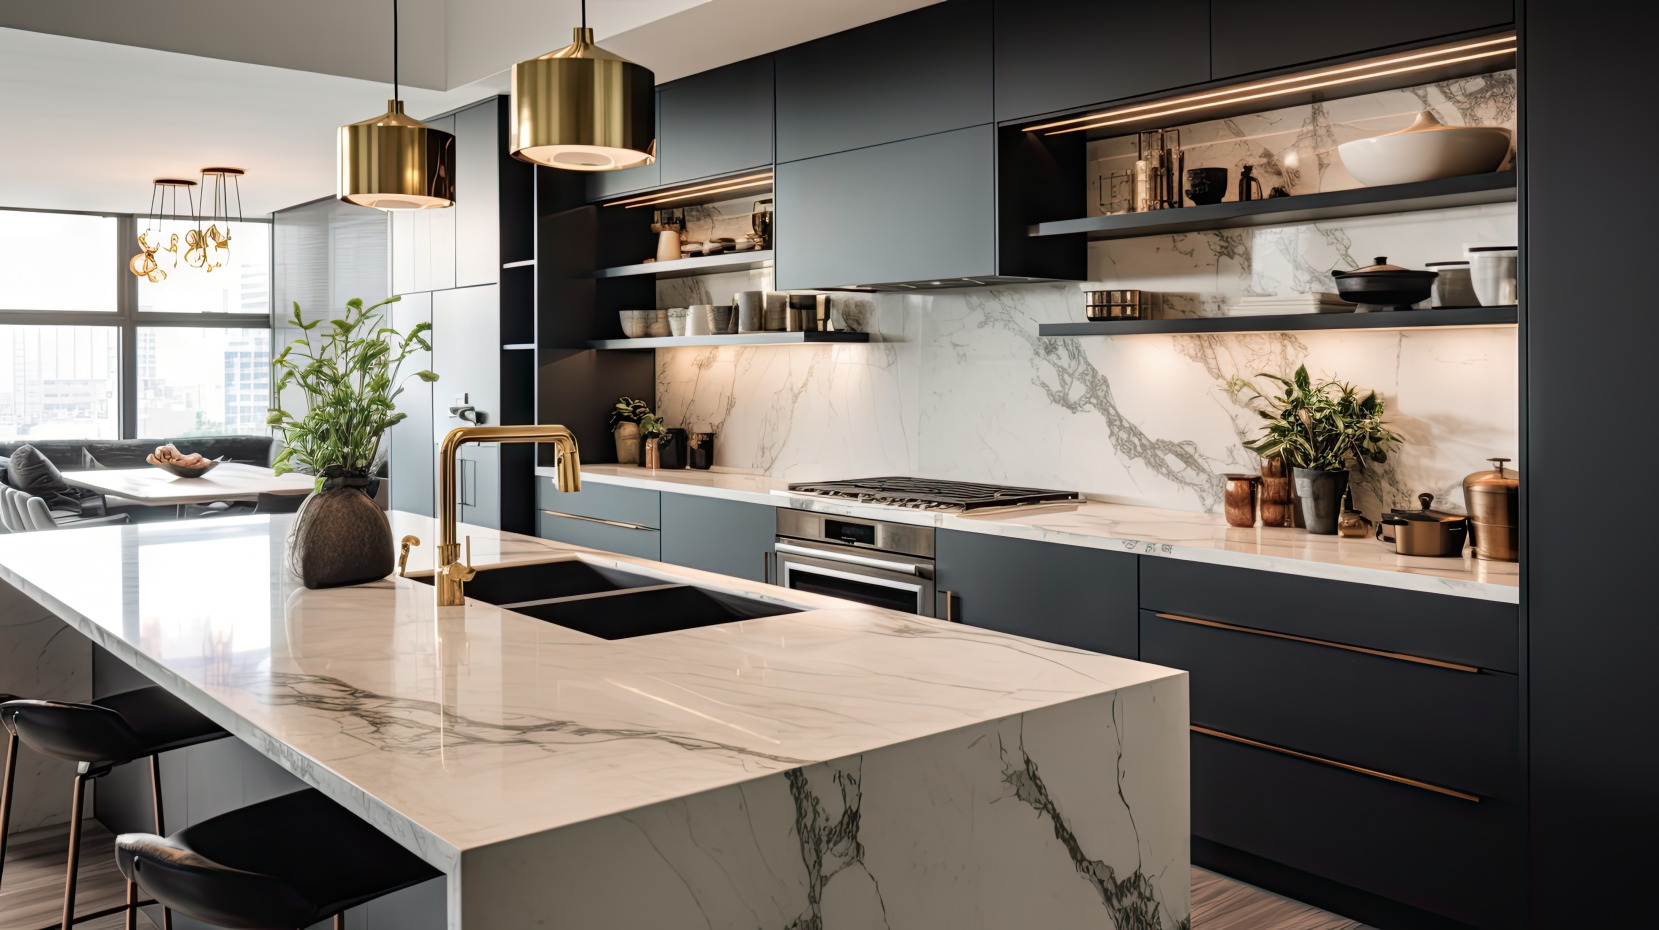 Une cuisine contemporaine et chic avec des armoires noires et blanches, des luminaires dorés et des carreaux de marbre